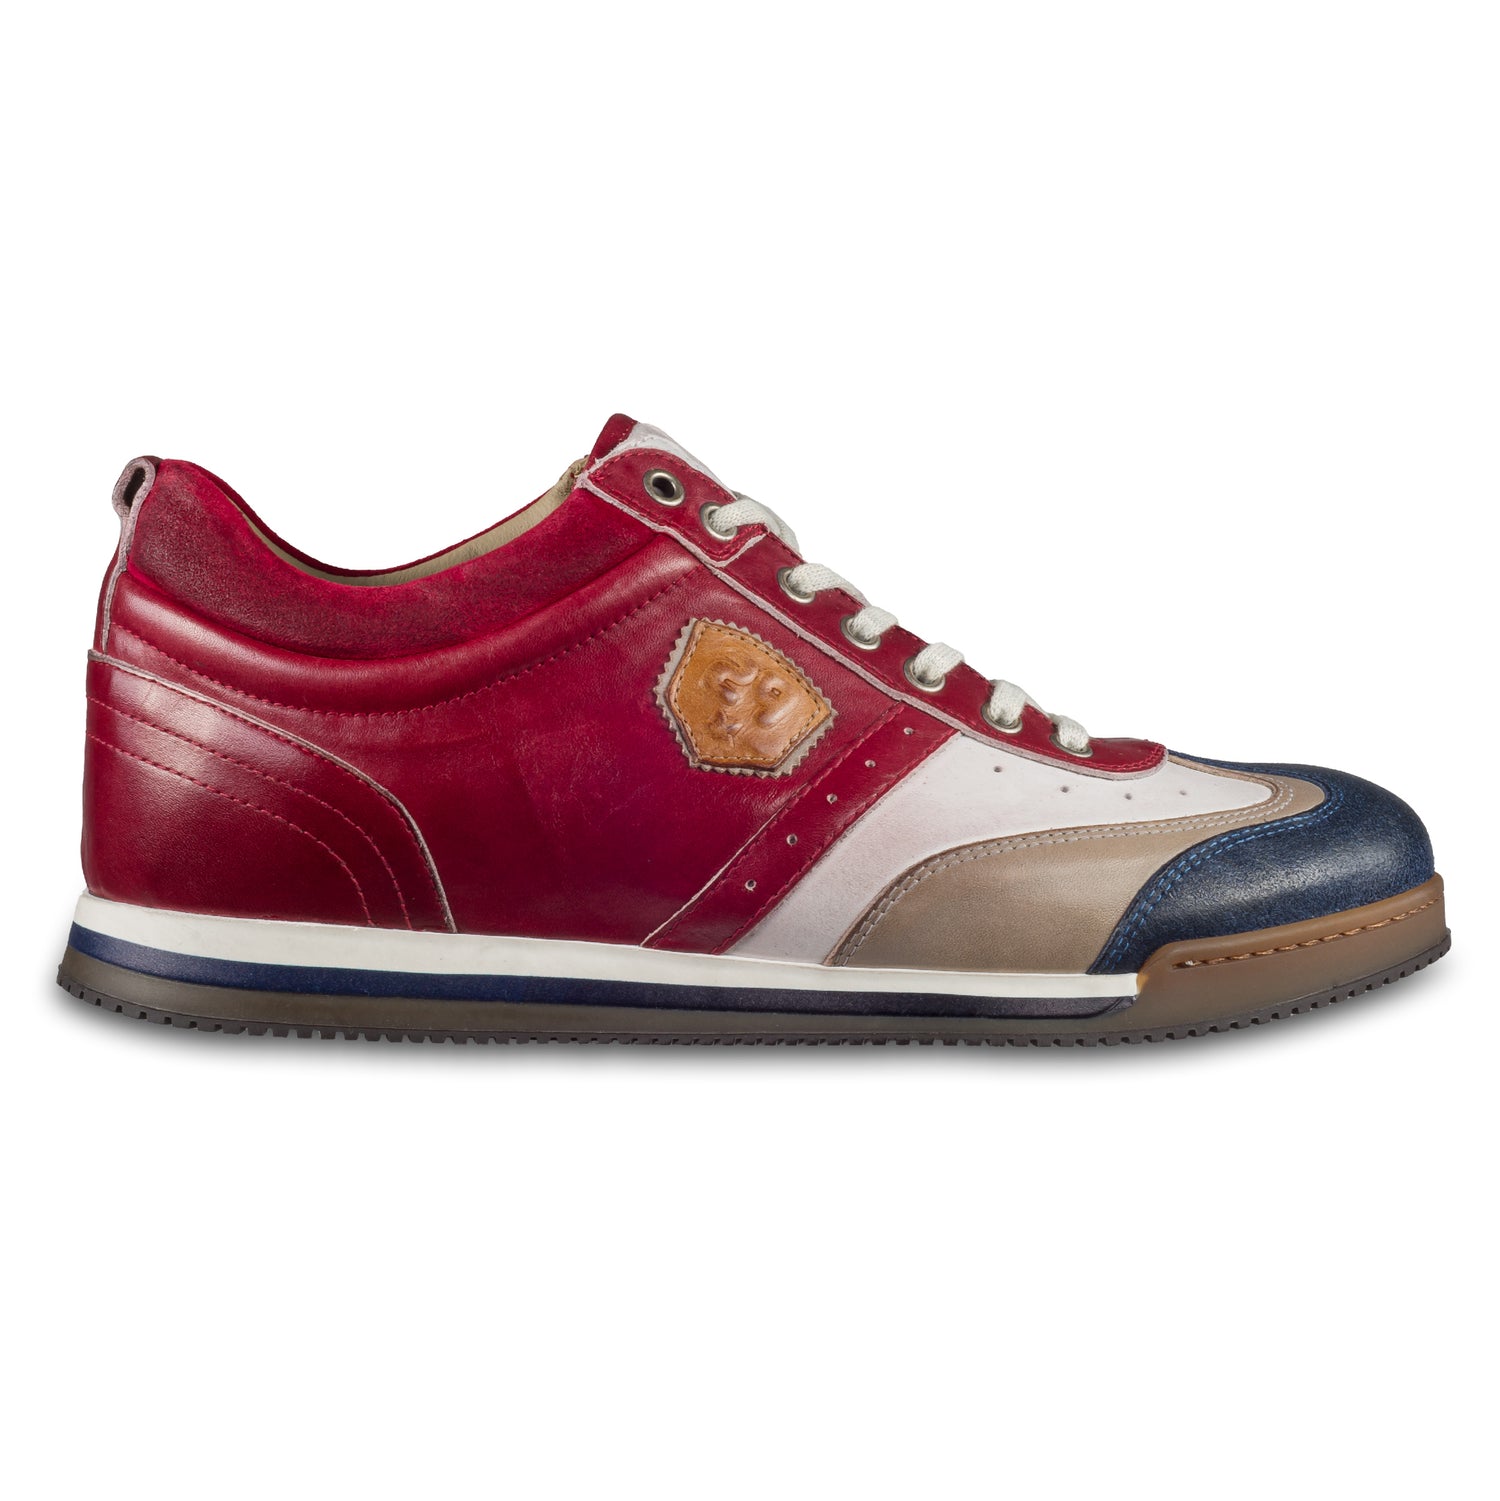 KAMO-GUTSU Herren Leder Sneaker rot / weiß / blau / grau, Retro-Optik. Modell SCUDO-005 rosso combi. Handgefertigt in Italien. Ansicht der Außenseite rechter Schuh. 